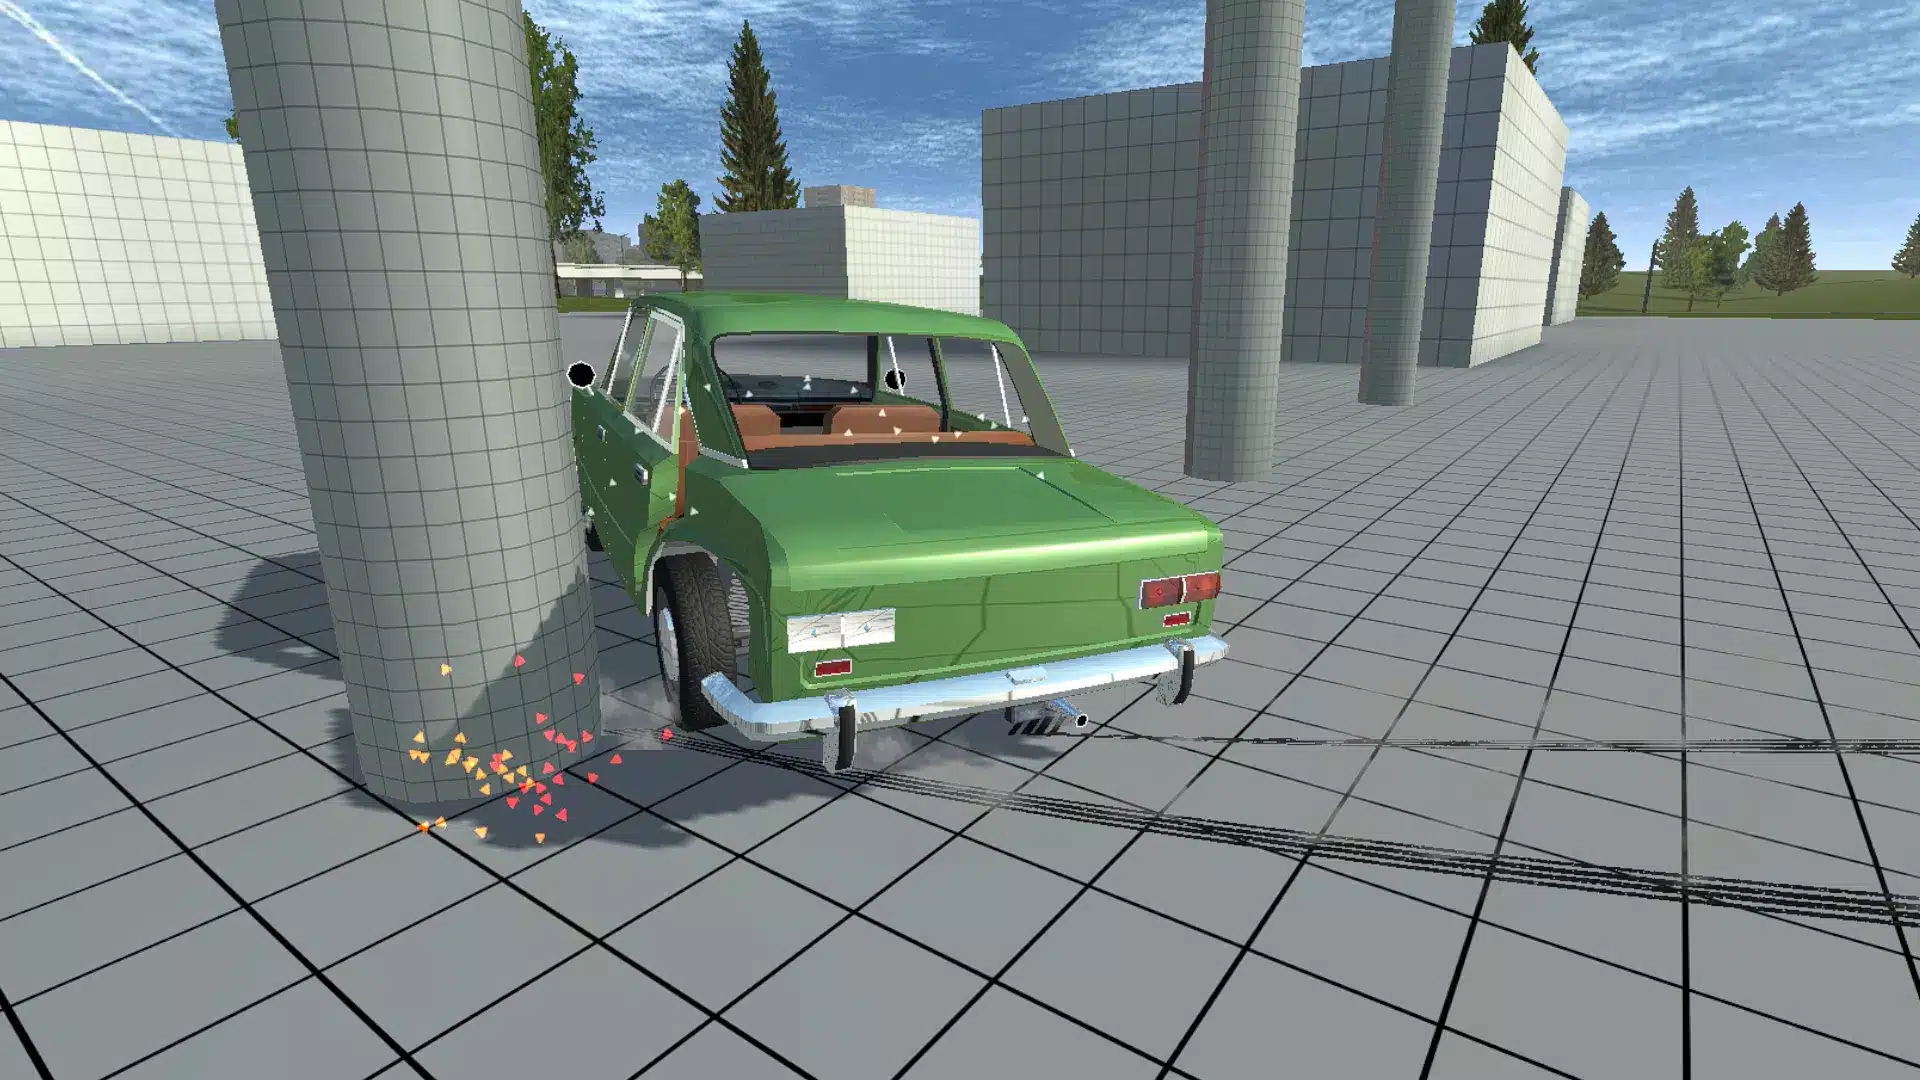 Simple Car Crash Physics Sim Image 1